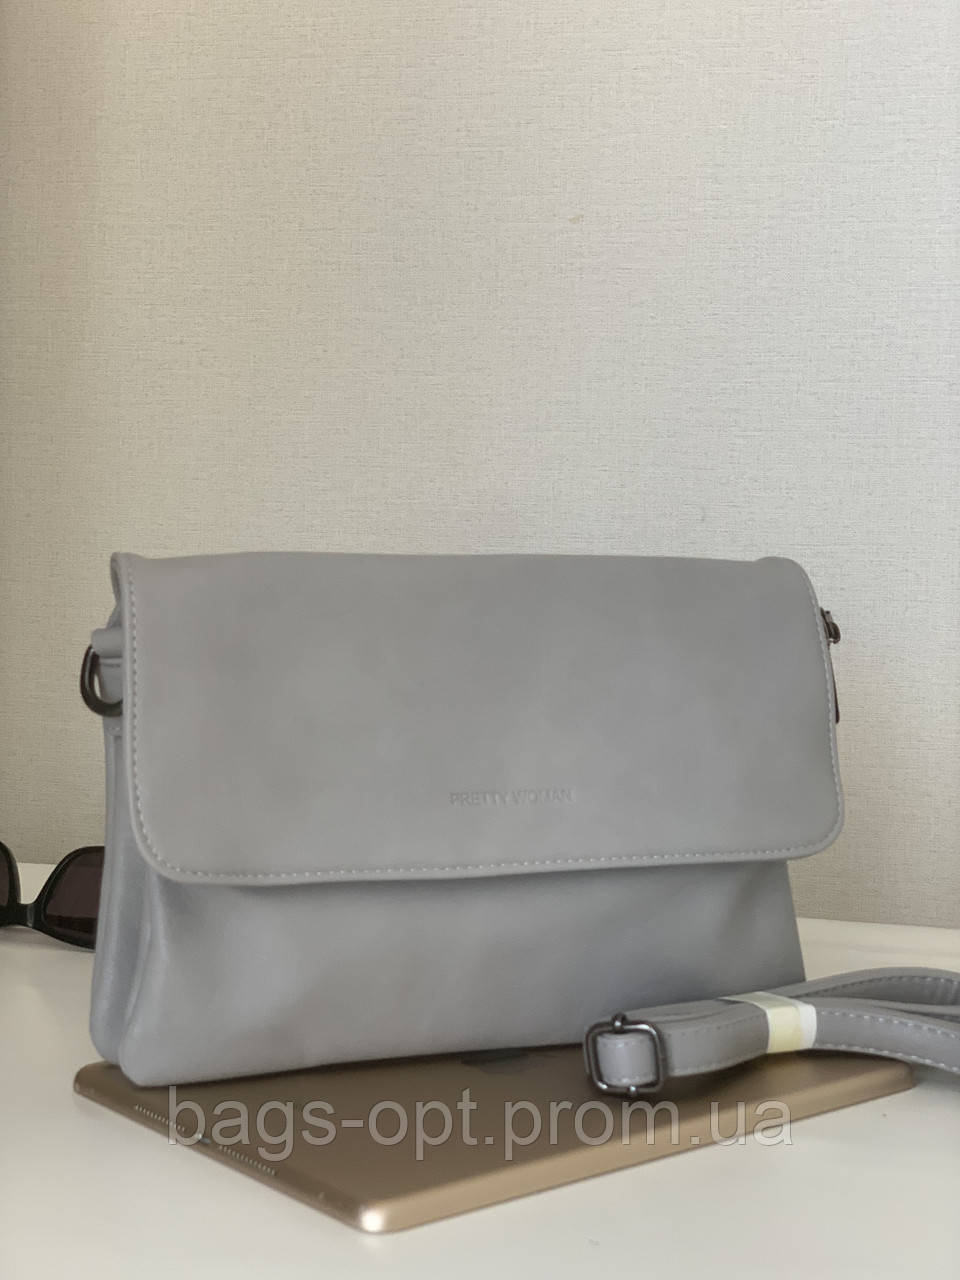 Жіноча сумочка клатч Pretty Woman світло-сірого кольору crossbody